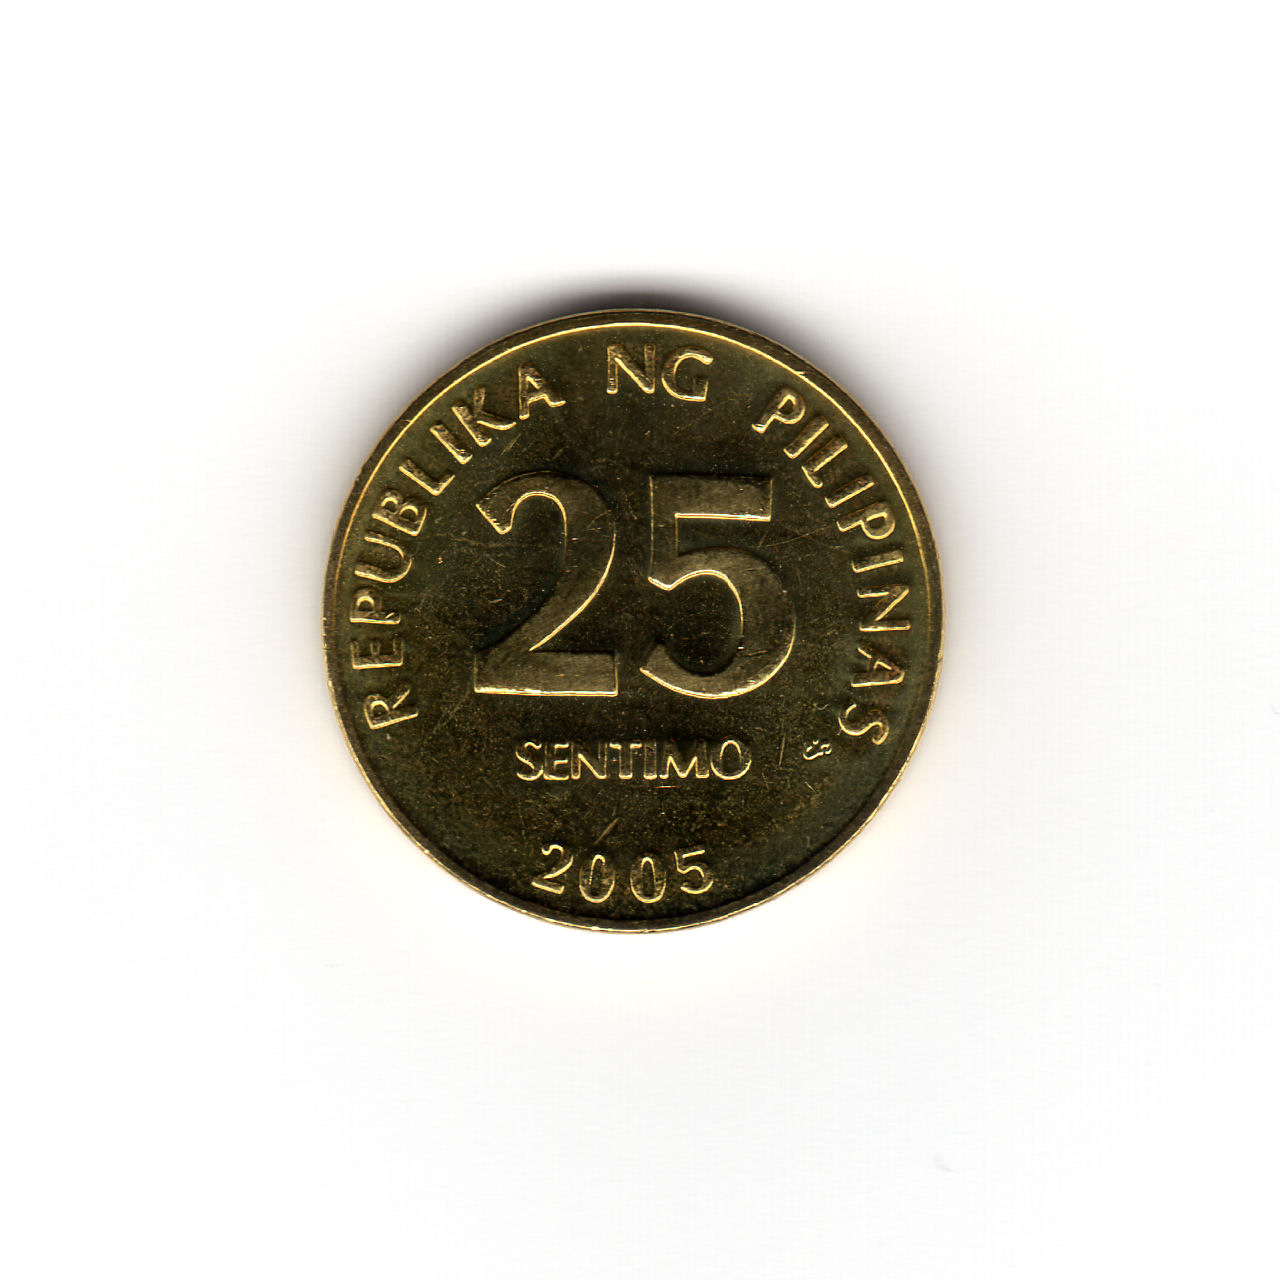 フィリピンの硬貨 2005年 25 SENTIMO